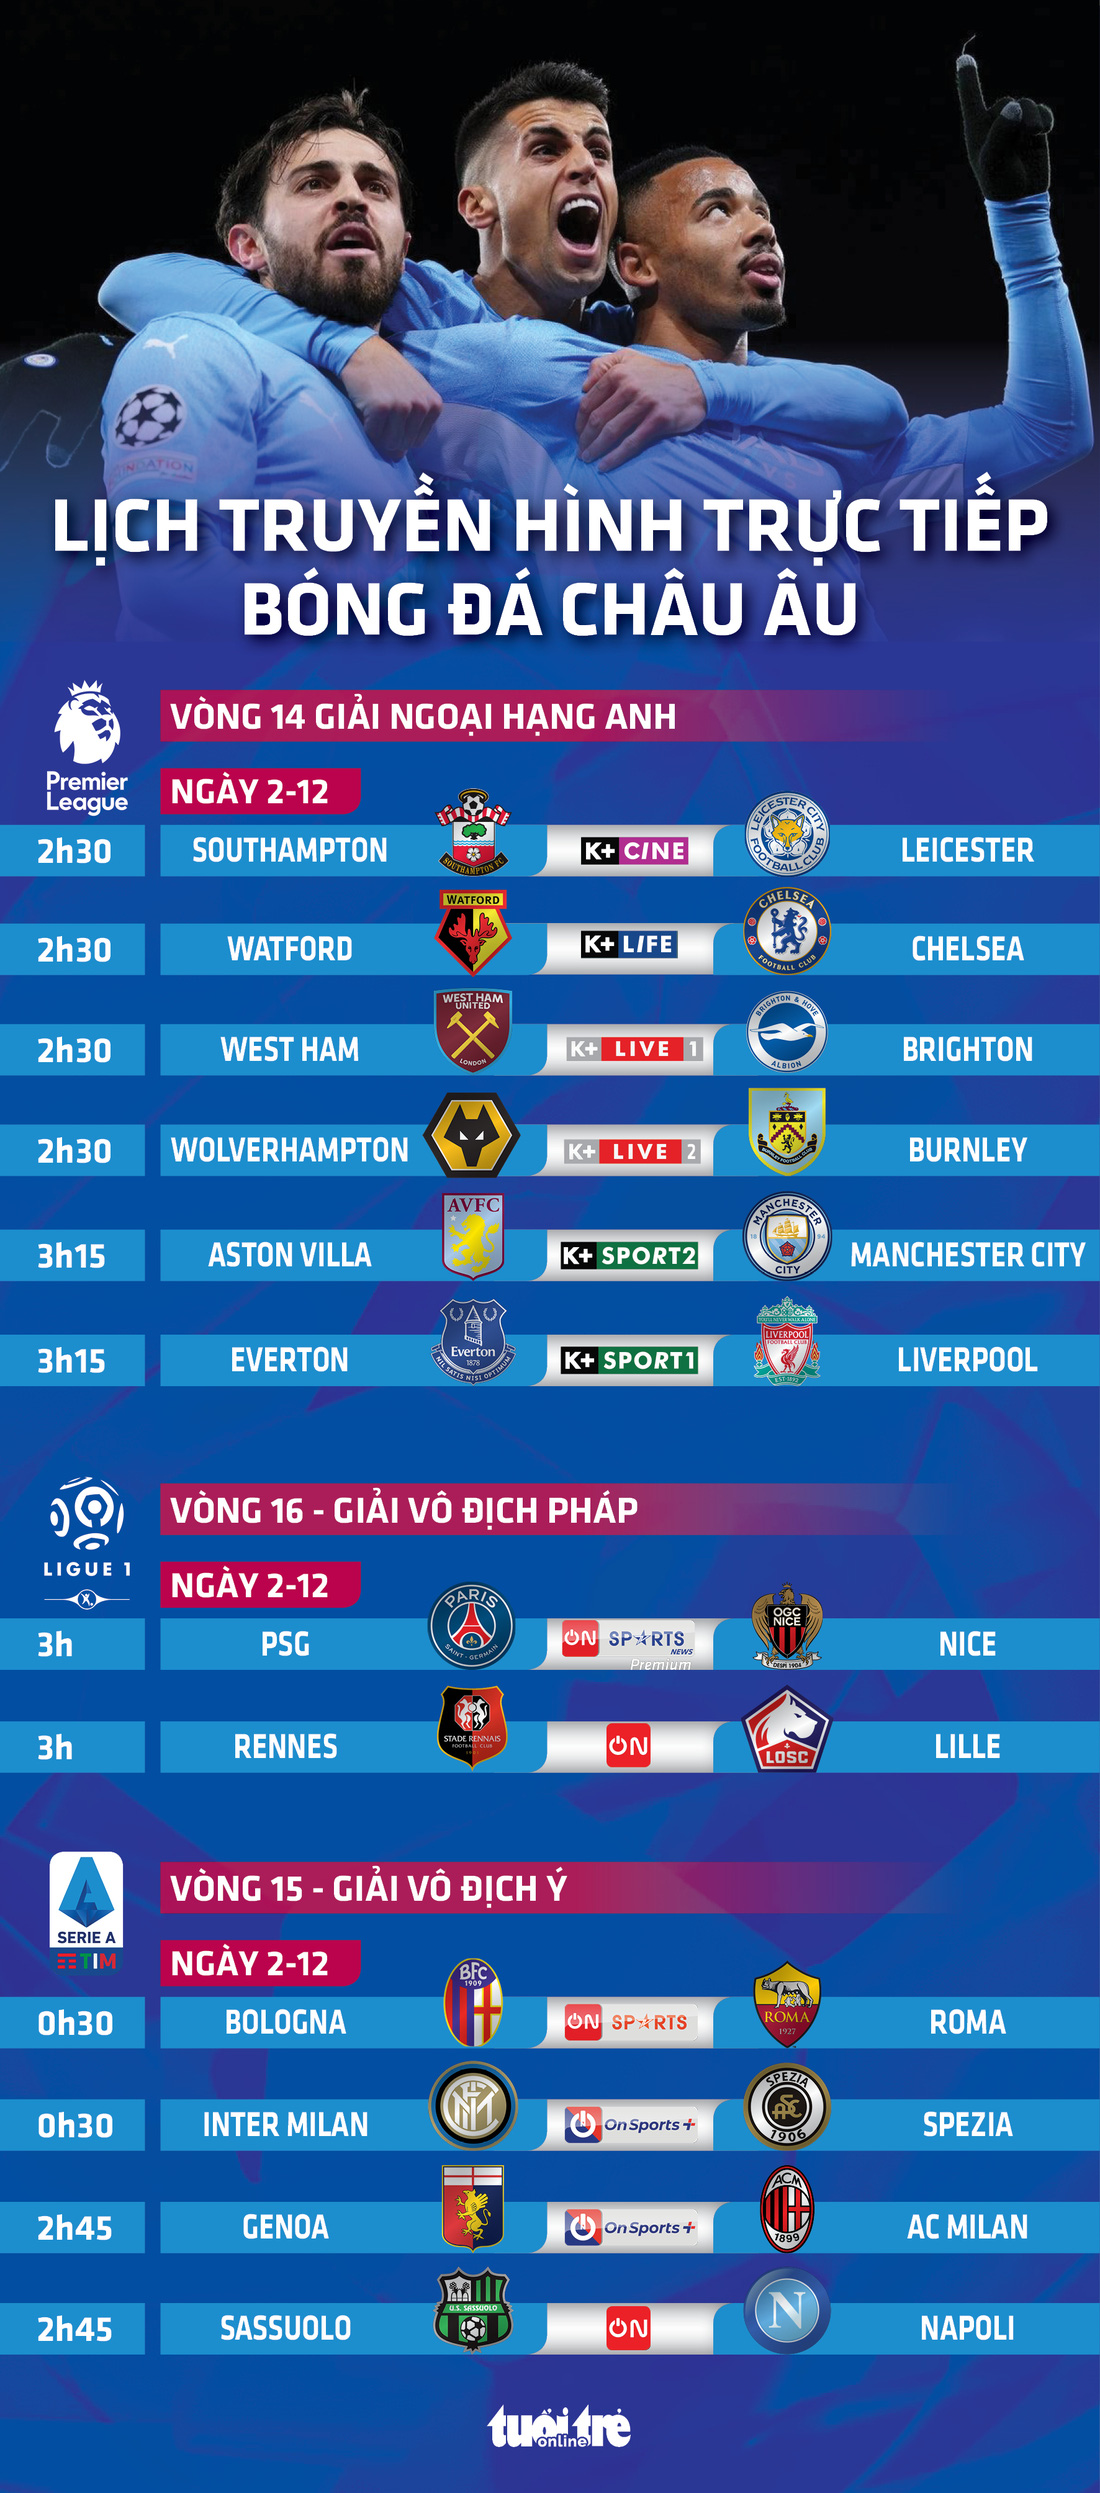 Lịch trực tiếp bóng đá châu Âu 2-12: Chelsea, Man City, Liverpool, PSG thi đấu - Ảnh 1.